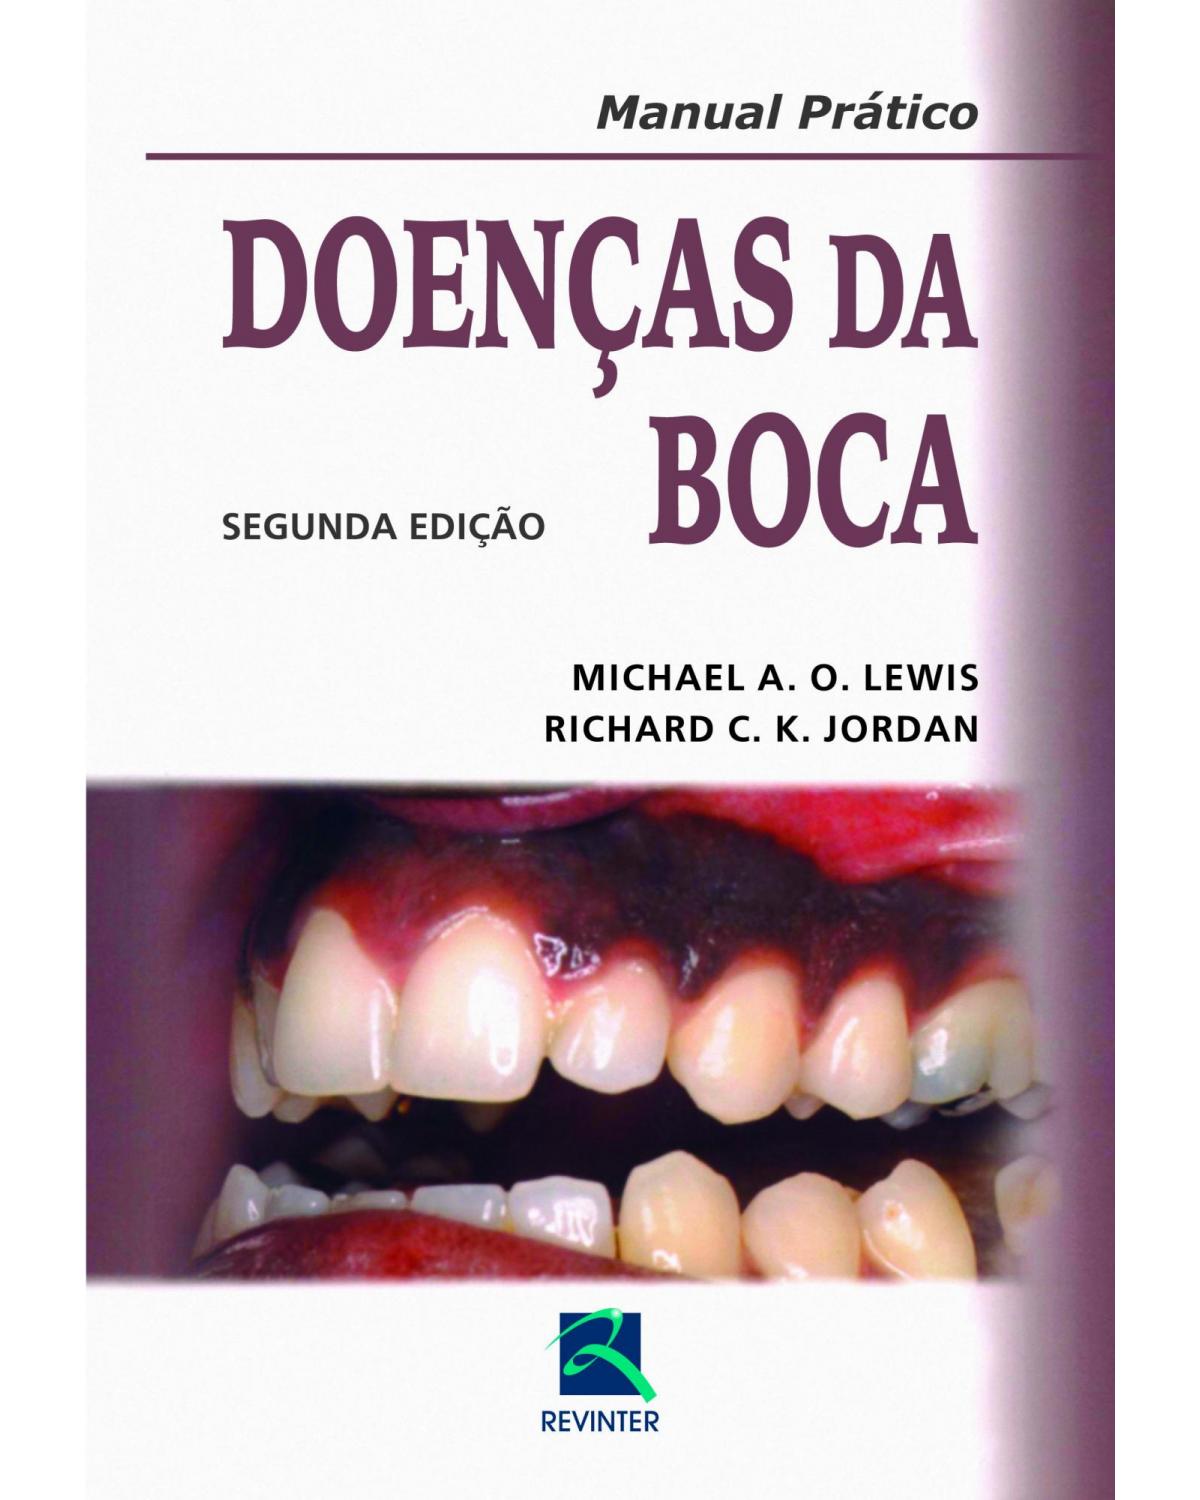 Doenças da boca - manual prático - 2ª Edição | 2014